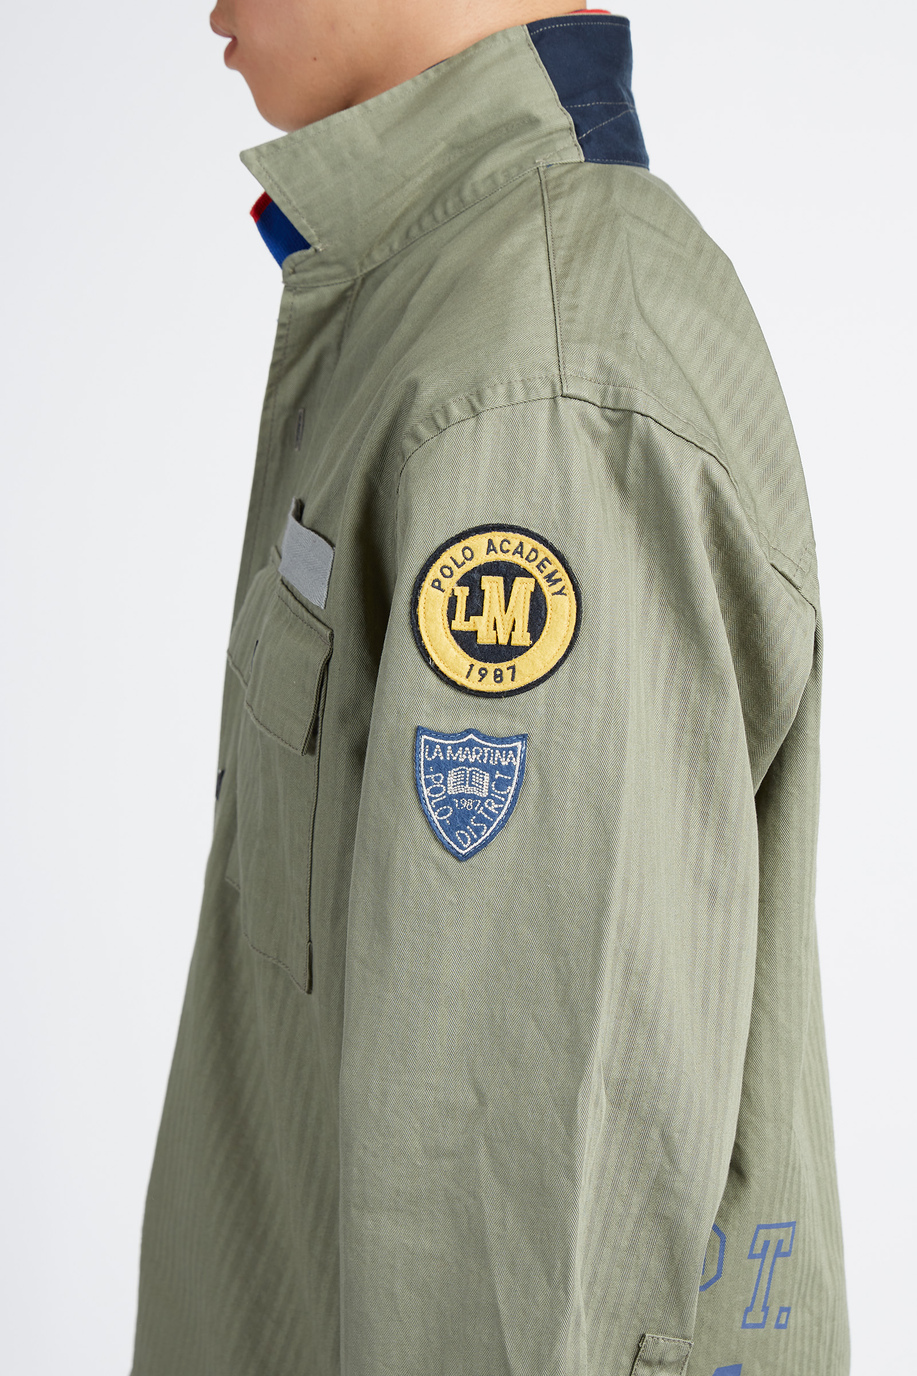 Camicia uomo manica lunga capsule Polo Academy con tasche e logo piccolo - Vaclav - Camicie | La Martina - Official Online Shop